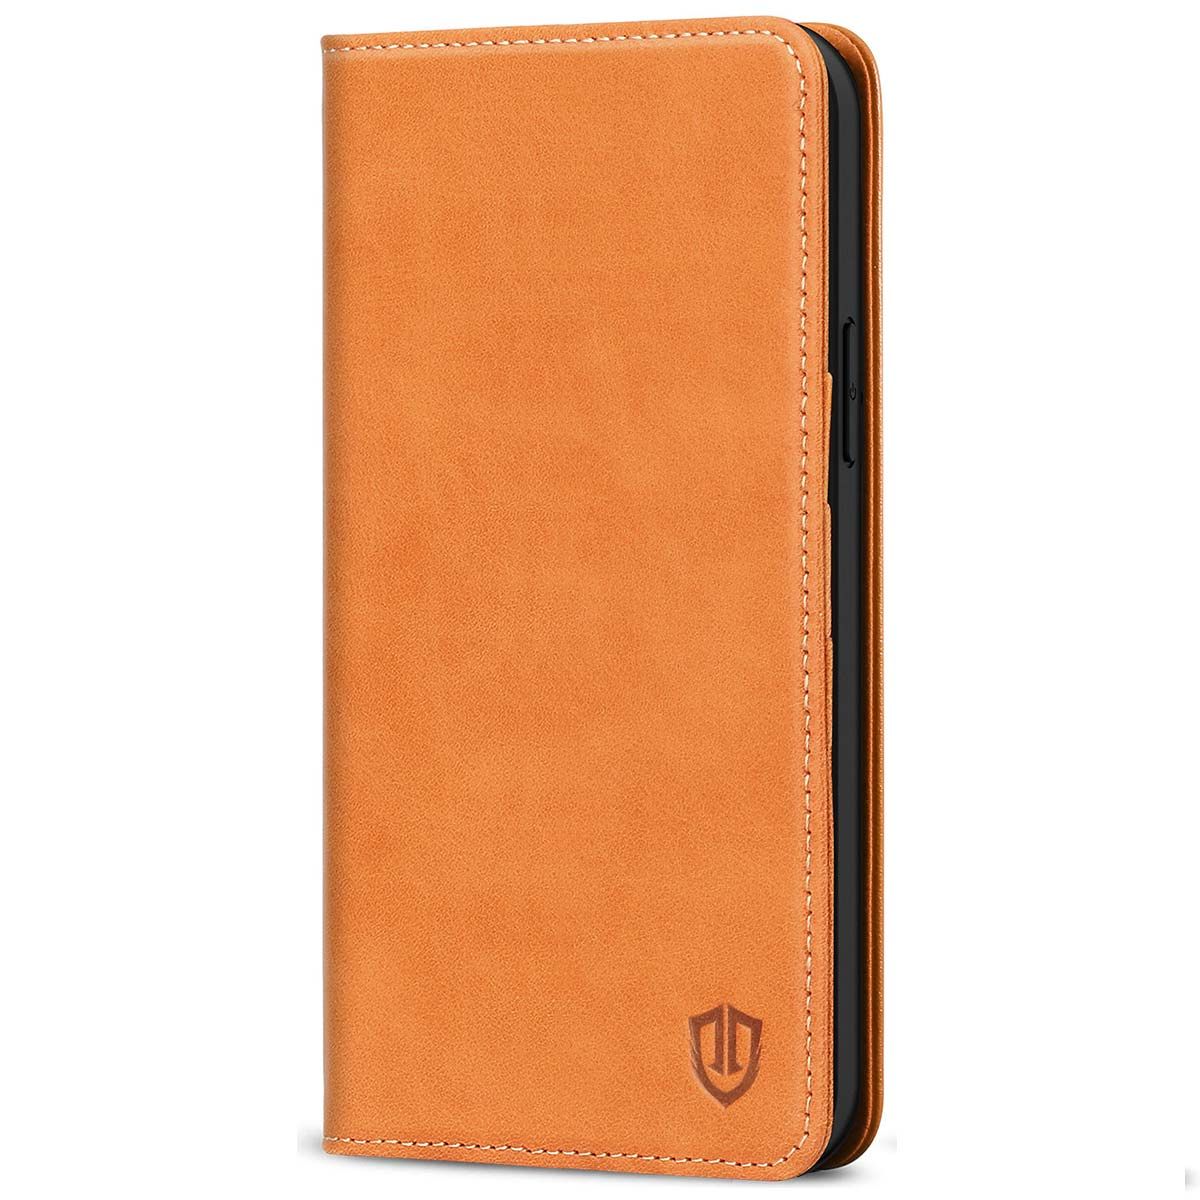 Premium Leather Flip Kickstand Wallet Case